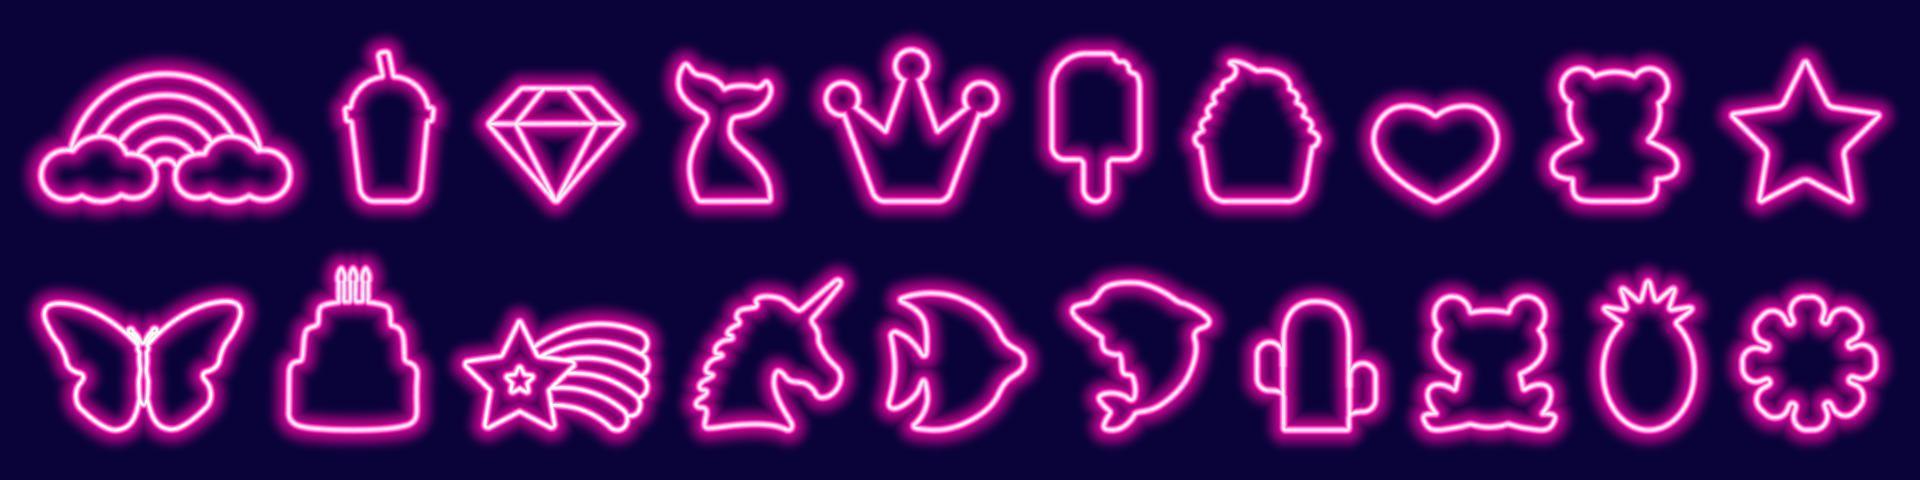 stor uppsättning av led fantasi födelsedag, mat, djur- neon ramar i trendig rosa Färg. glöd symboler och tecken, enhörning, regnbåge, fjäril, krona, stjärna, kaka. vektor illustration i neon stil